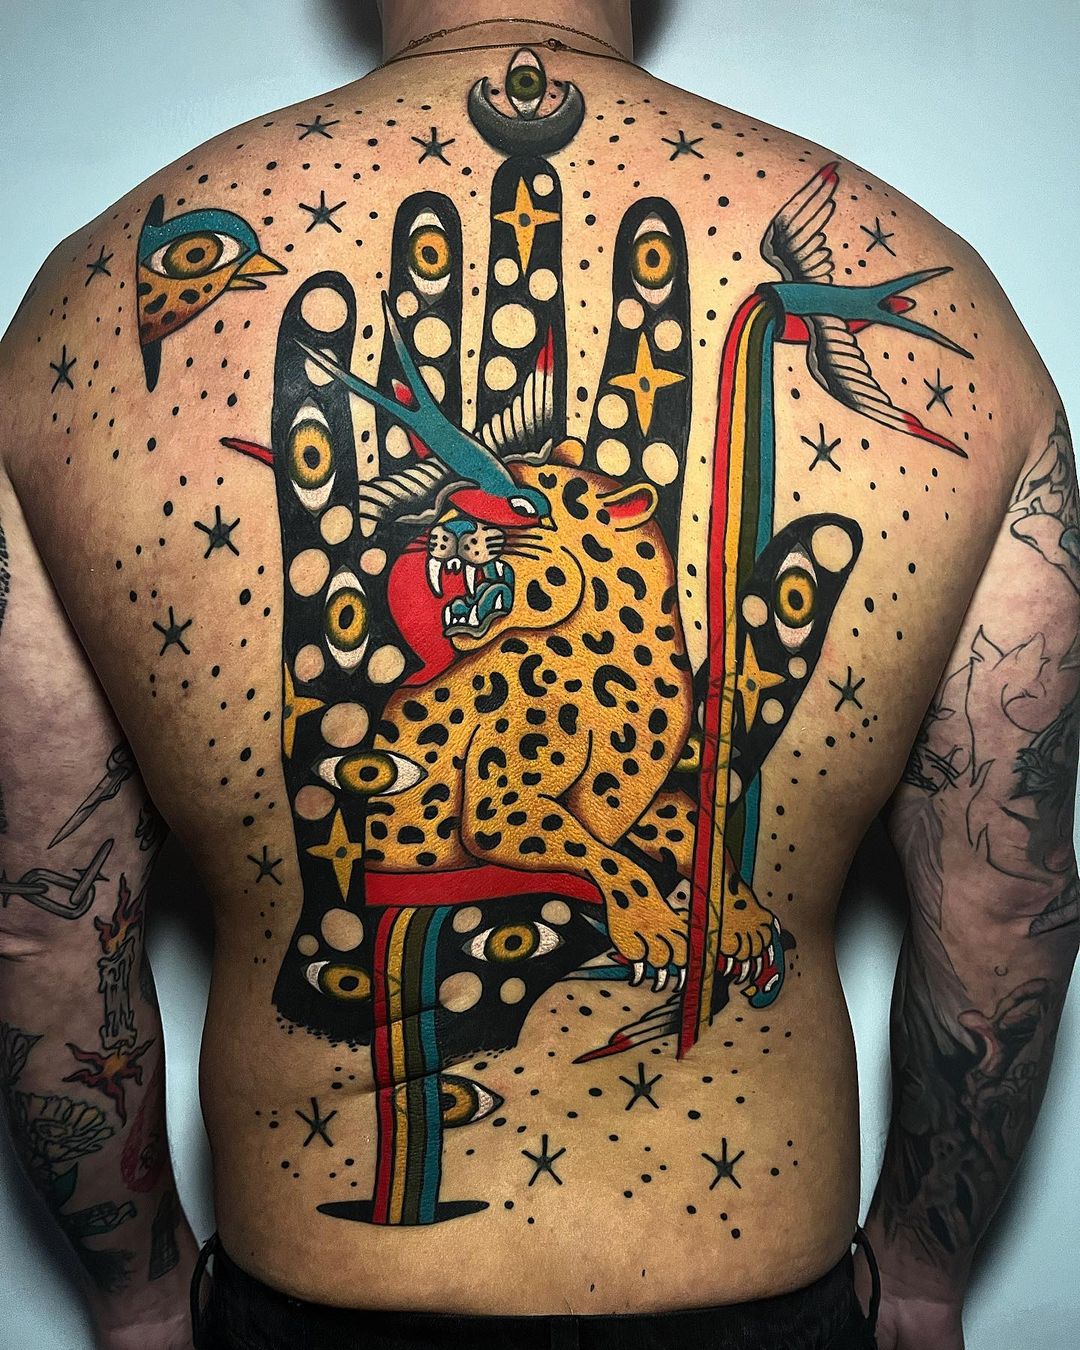 The-fan-of-psy-tattoo | TechnoCrazed